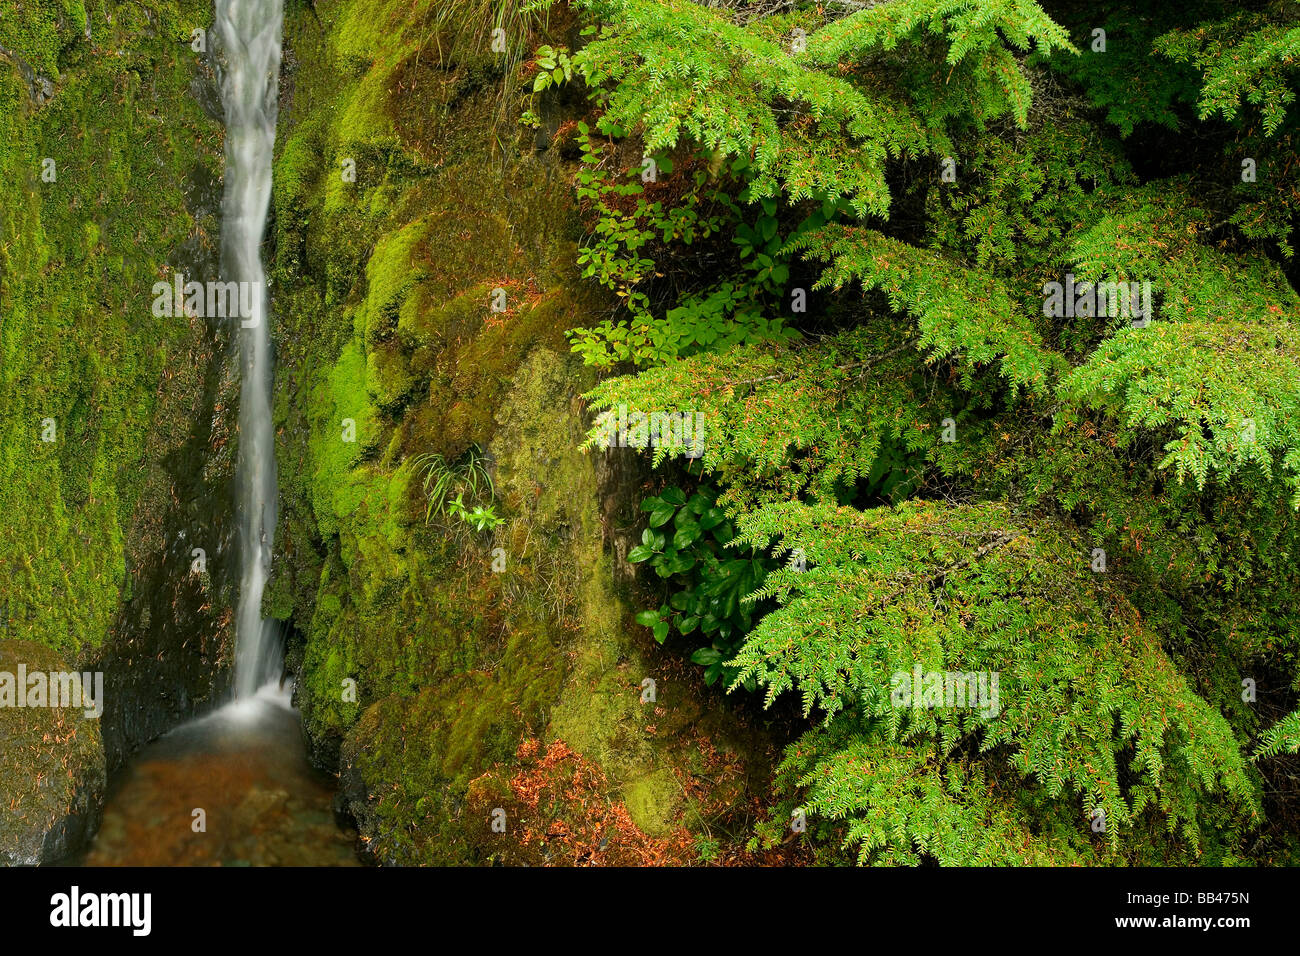 USA, Washington, Mount Baker Wildnis, Cascade Mountains. Kleiner Wasserfall inmitten dichten Laub. Stockfoto